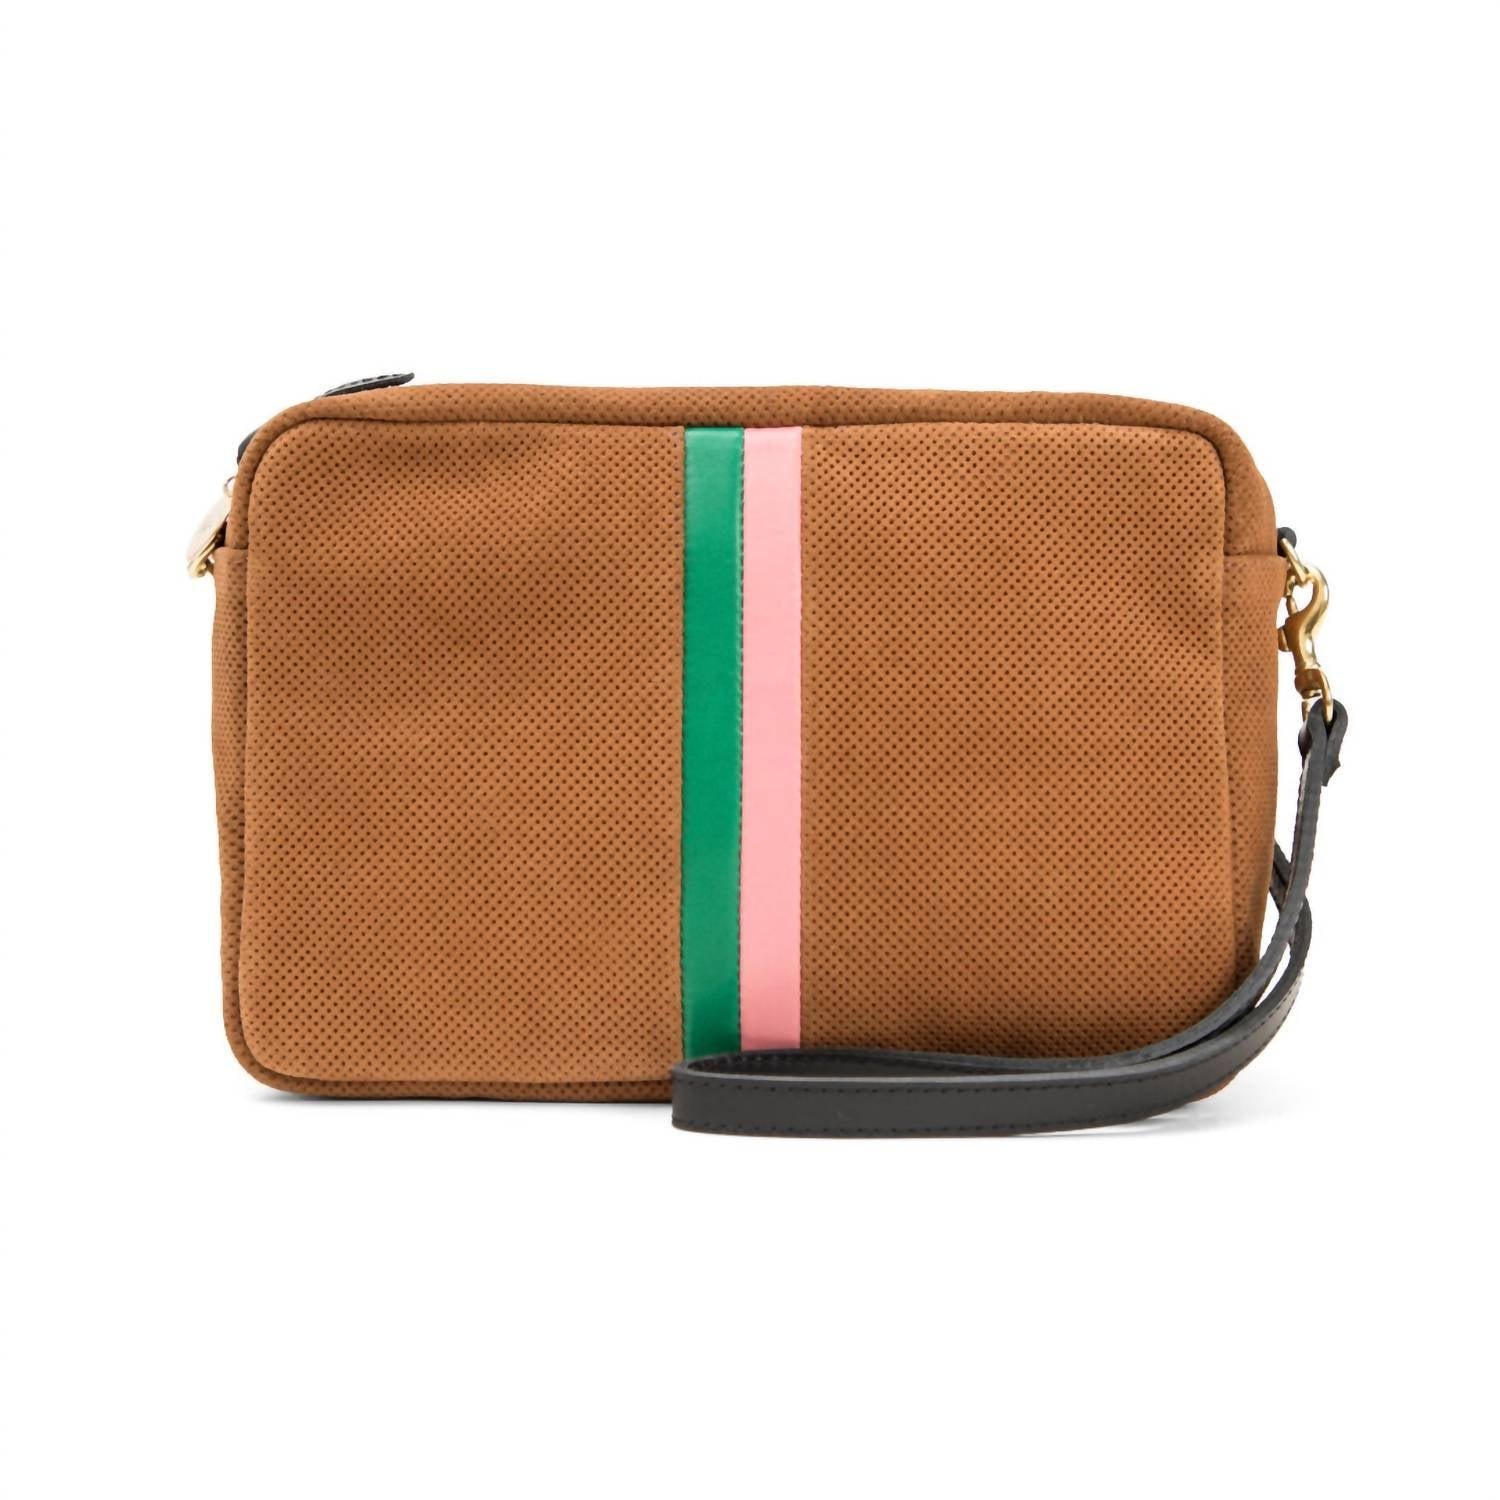 v italia purse